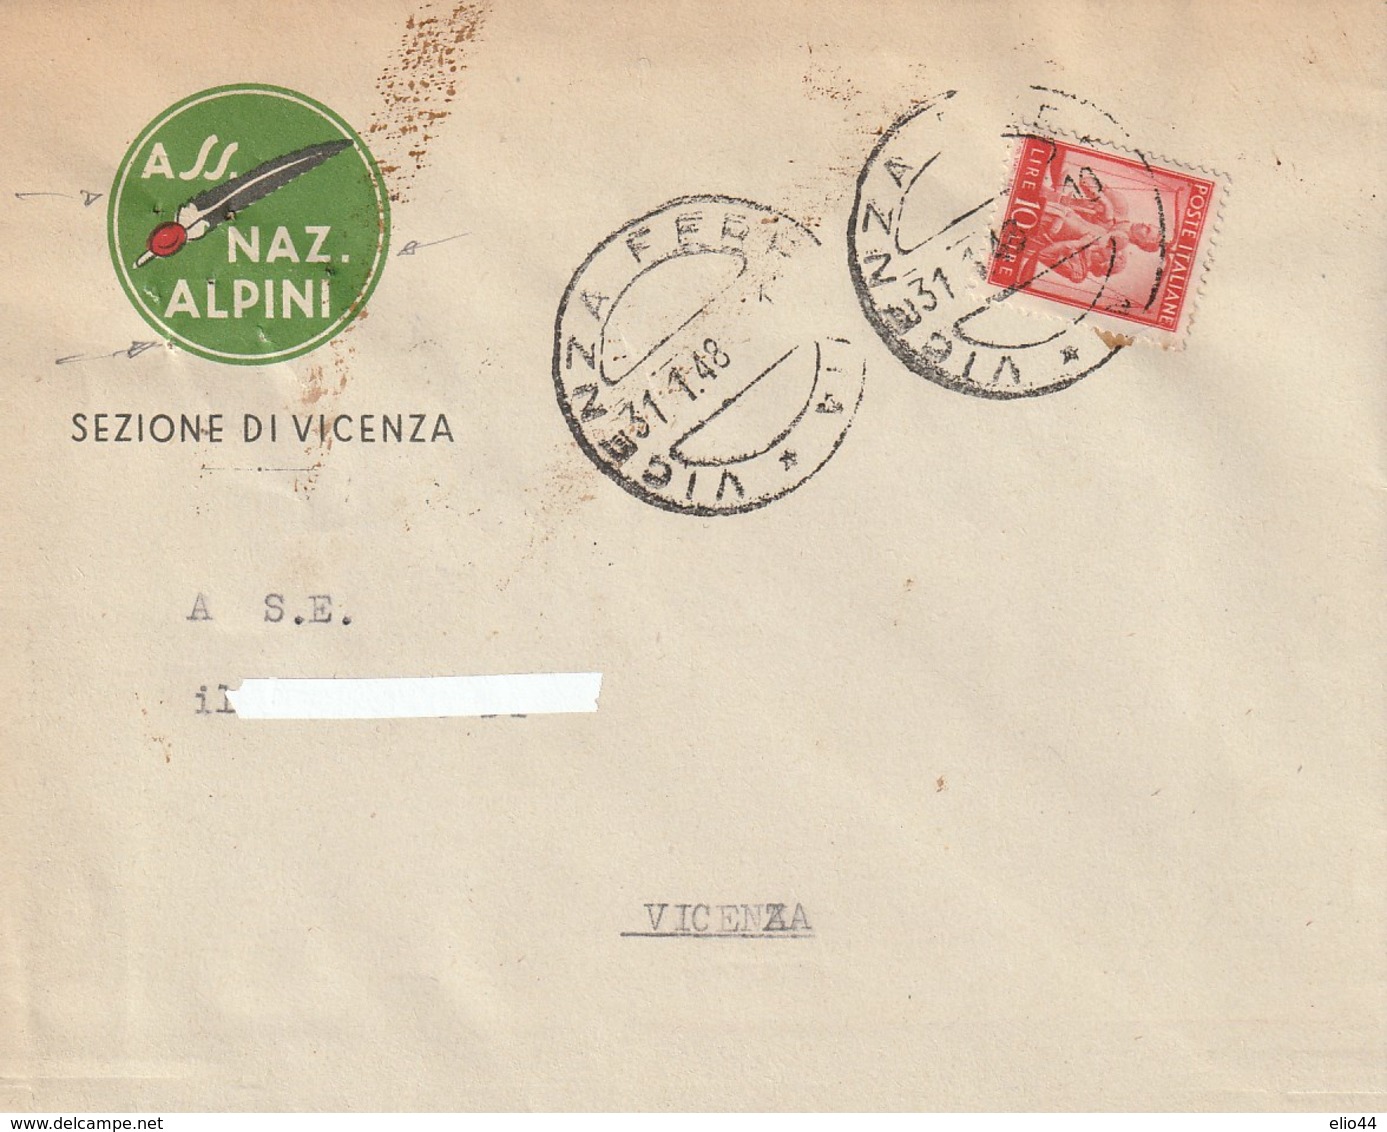 Veneto - Vicenza - A.N.A. Sezione Di Vicenza - - Vicenza